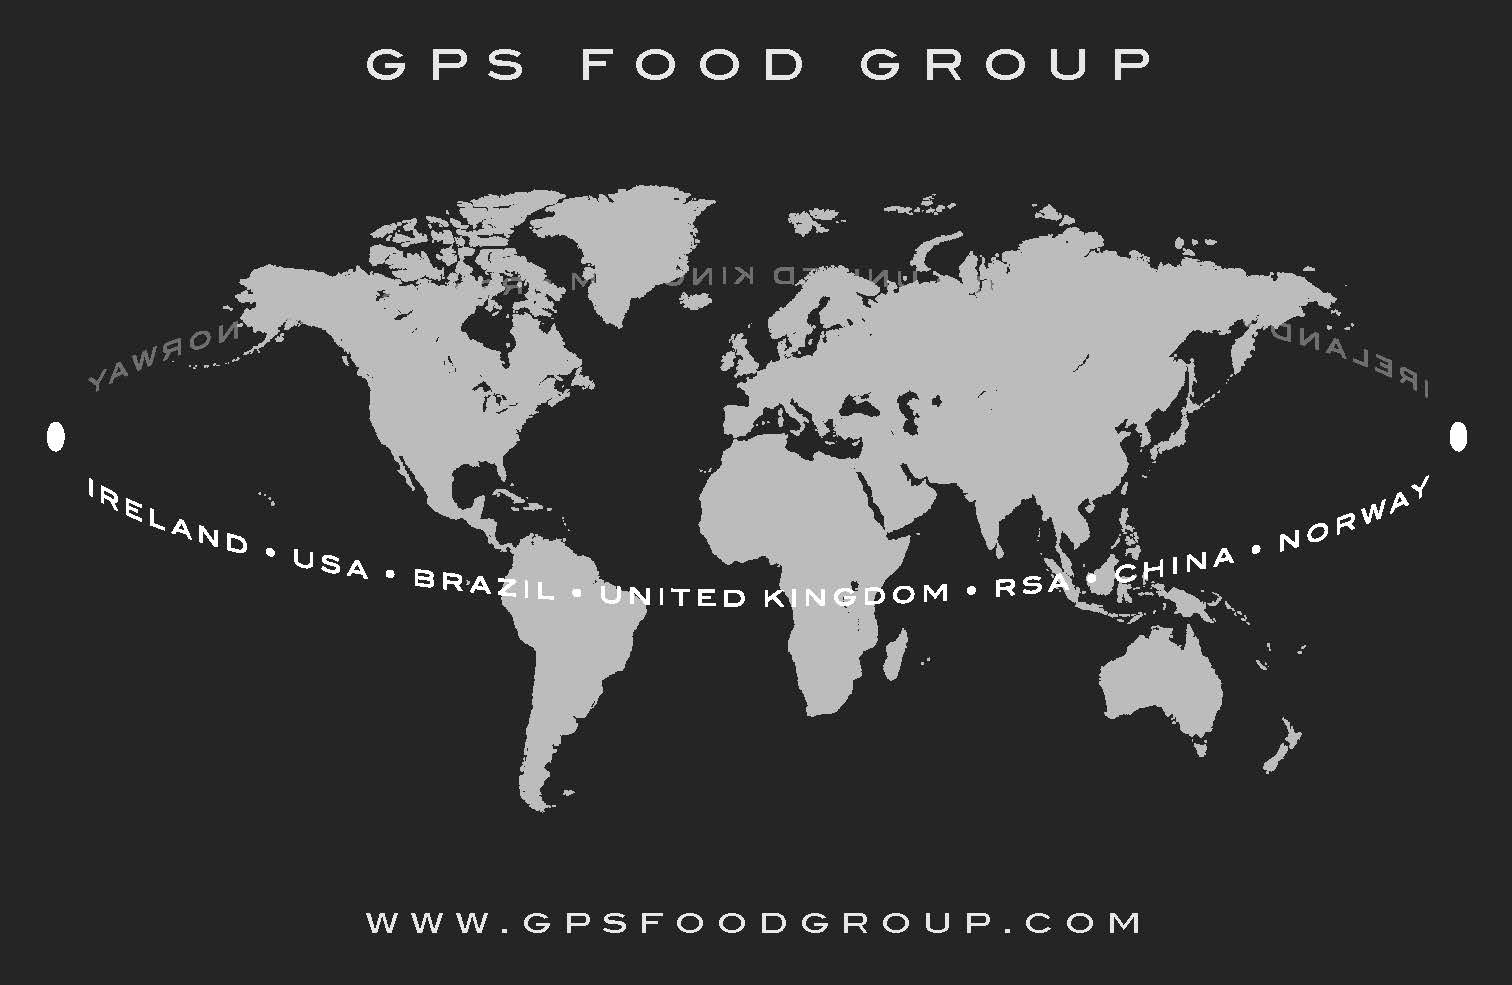 GPS Food Group